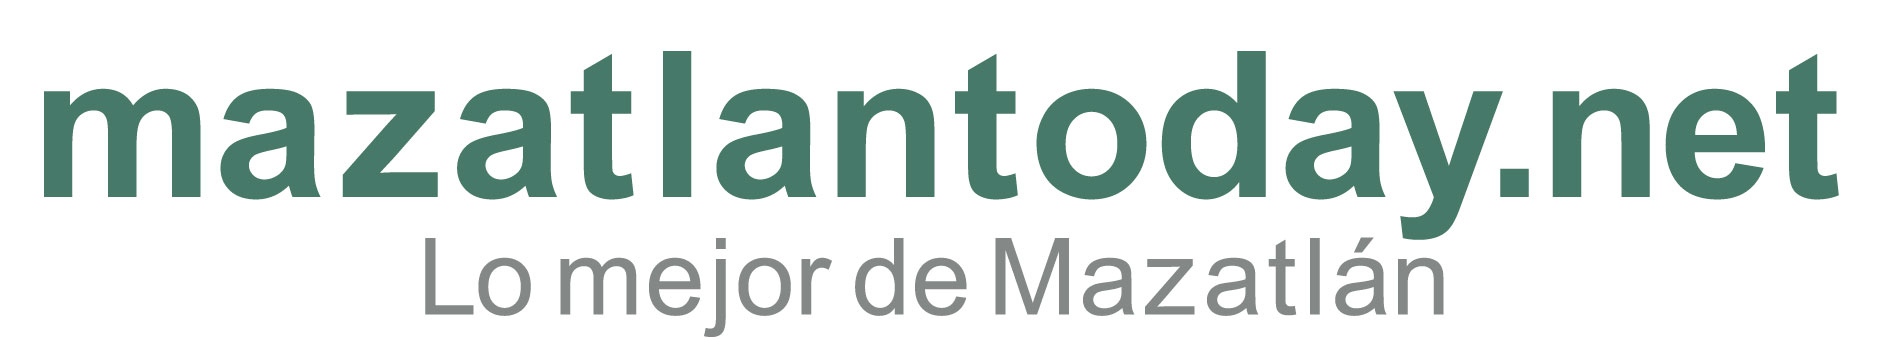 Semana Santa Mazatlan 2023 | mazatlantoday.net presentación de guía de viaje 2022 | INICIO